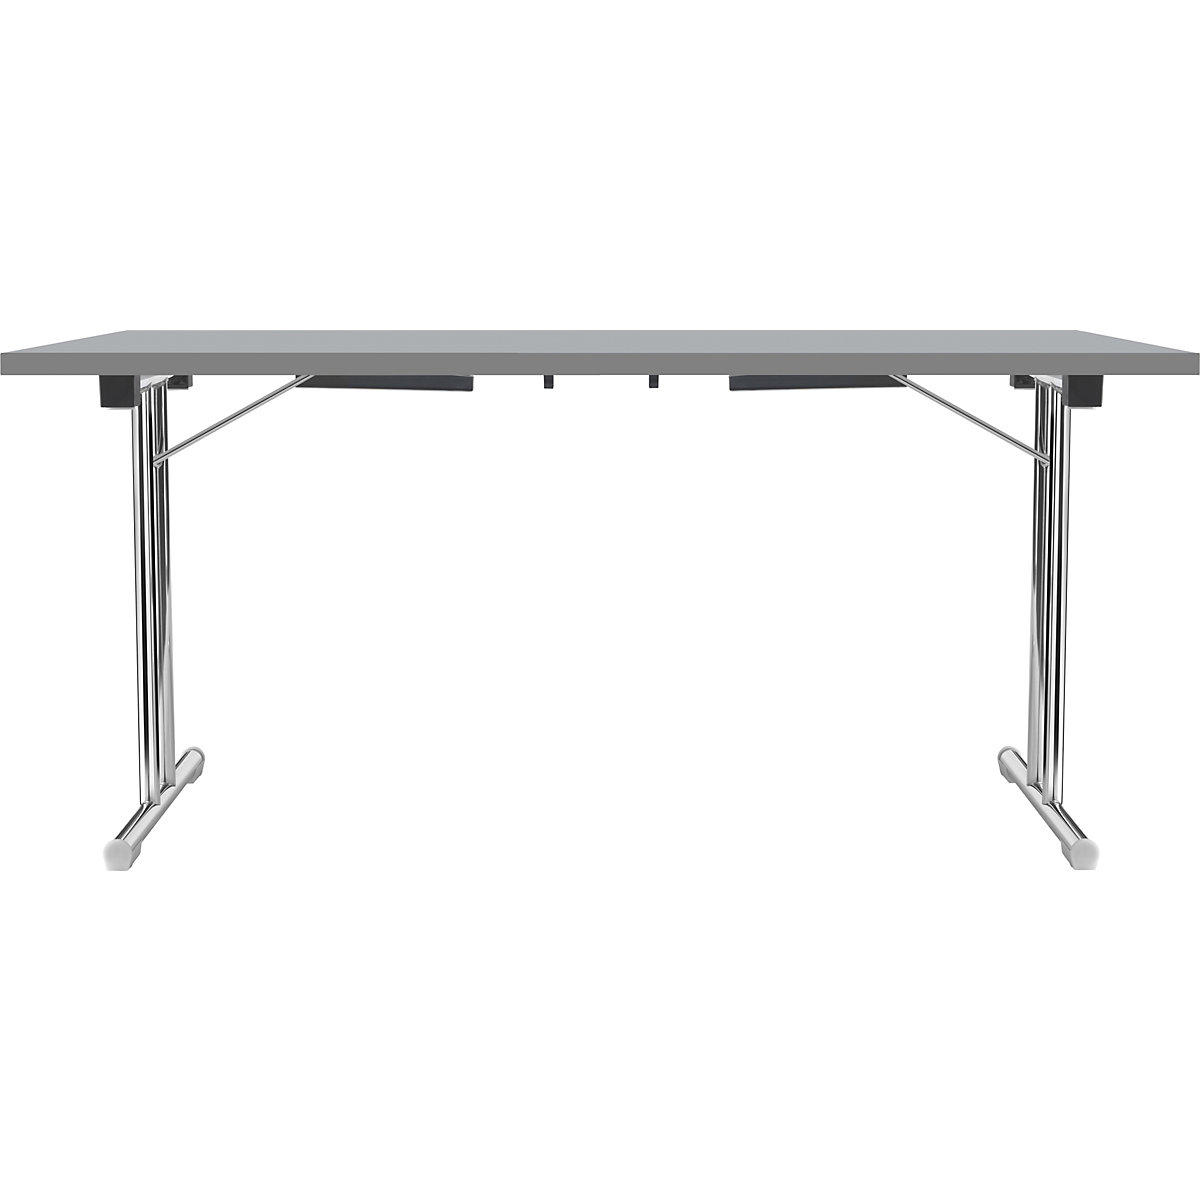 Zložljiva miza z dvojnim podnožjem v obliki črke T, ogrodje iz okrogle jeklene cevi, kromirano, svetlo siva/antracitna, ŠxG 1400 x 700 mm-4